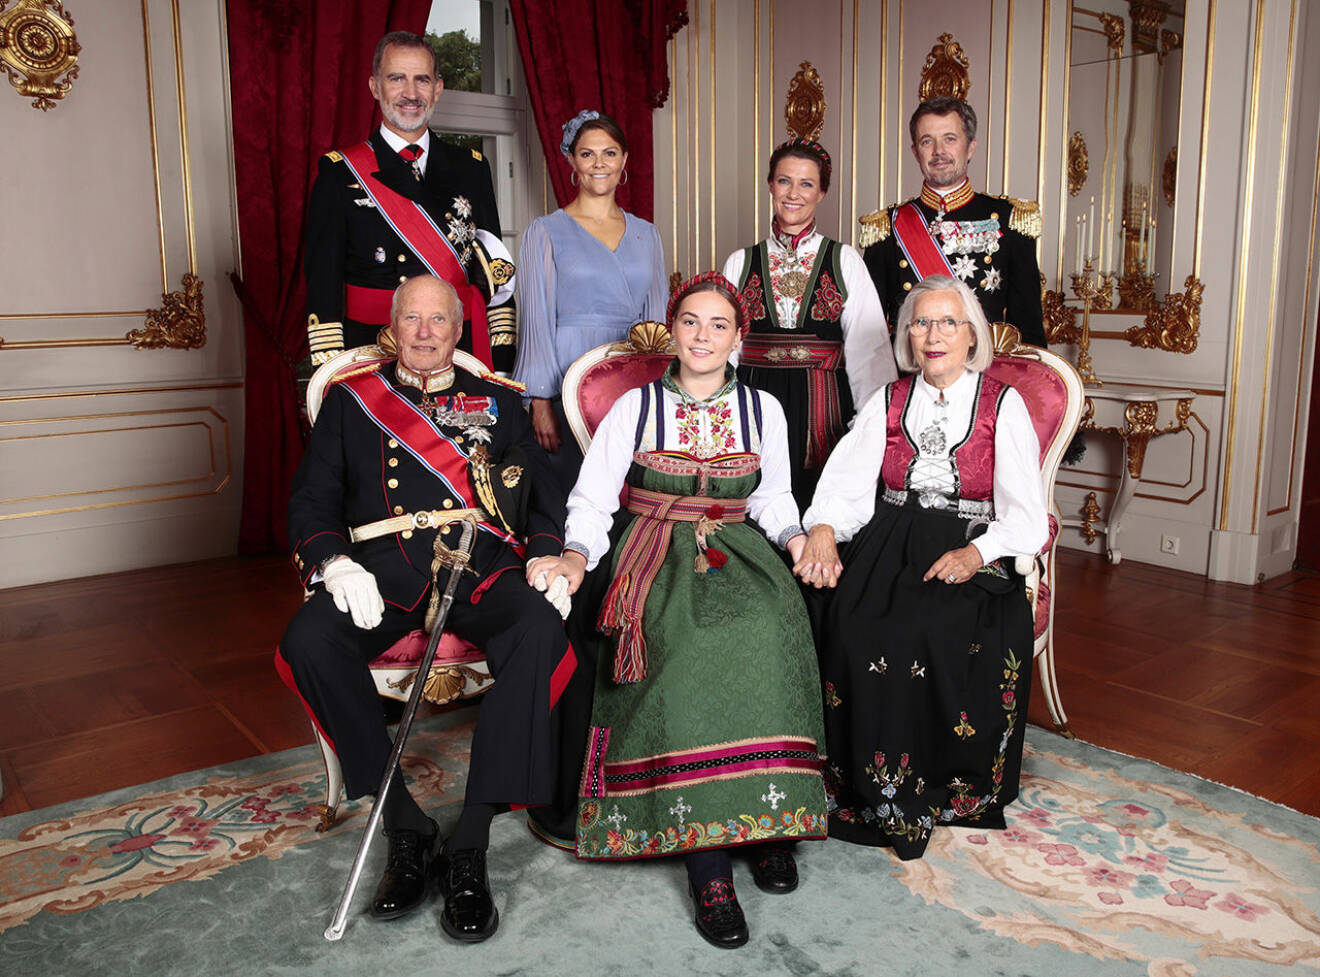 Ingrid Alexandra tillsammans med sina gudföräldrar. Från vänster, kung Felipe, kronprinsessan Victoria, prinsessan Märtha Louise, kronprins Frederik. Längst fram sitter kung Harald till vänster om Ingrid Alexandra och Marit Tjessem till höger.